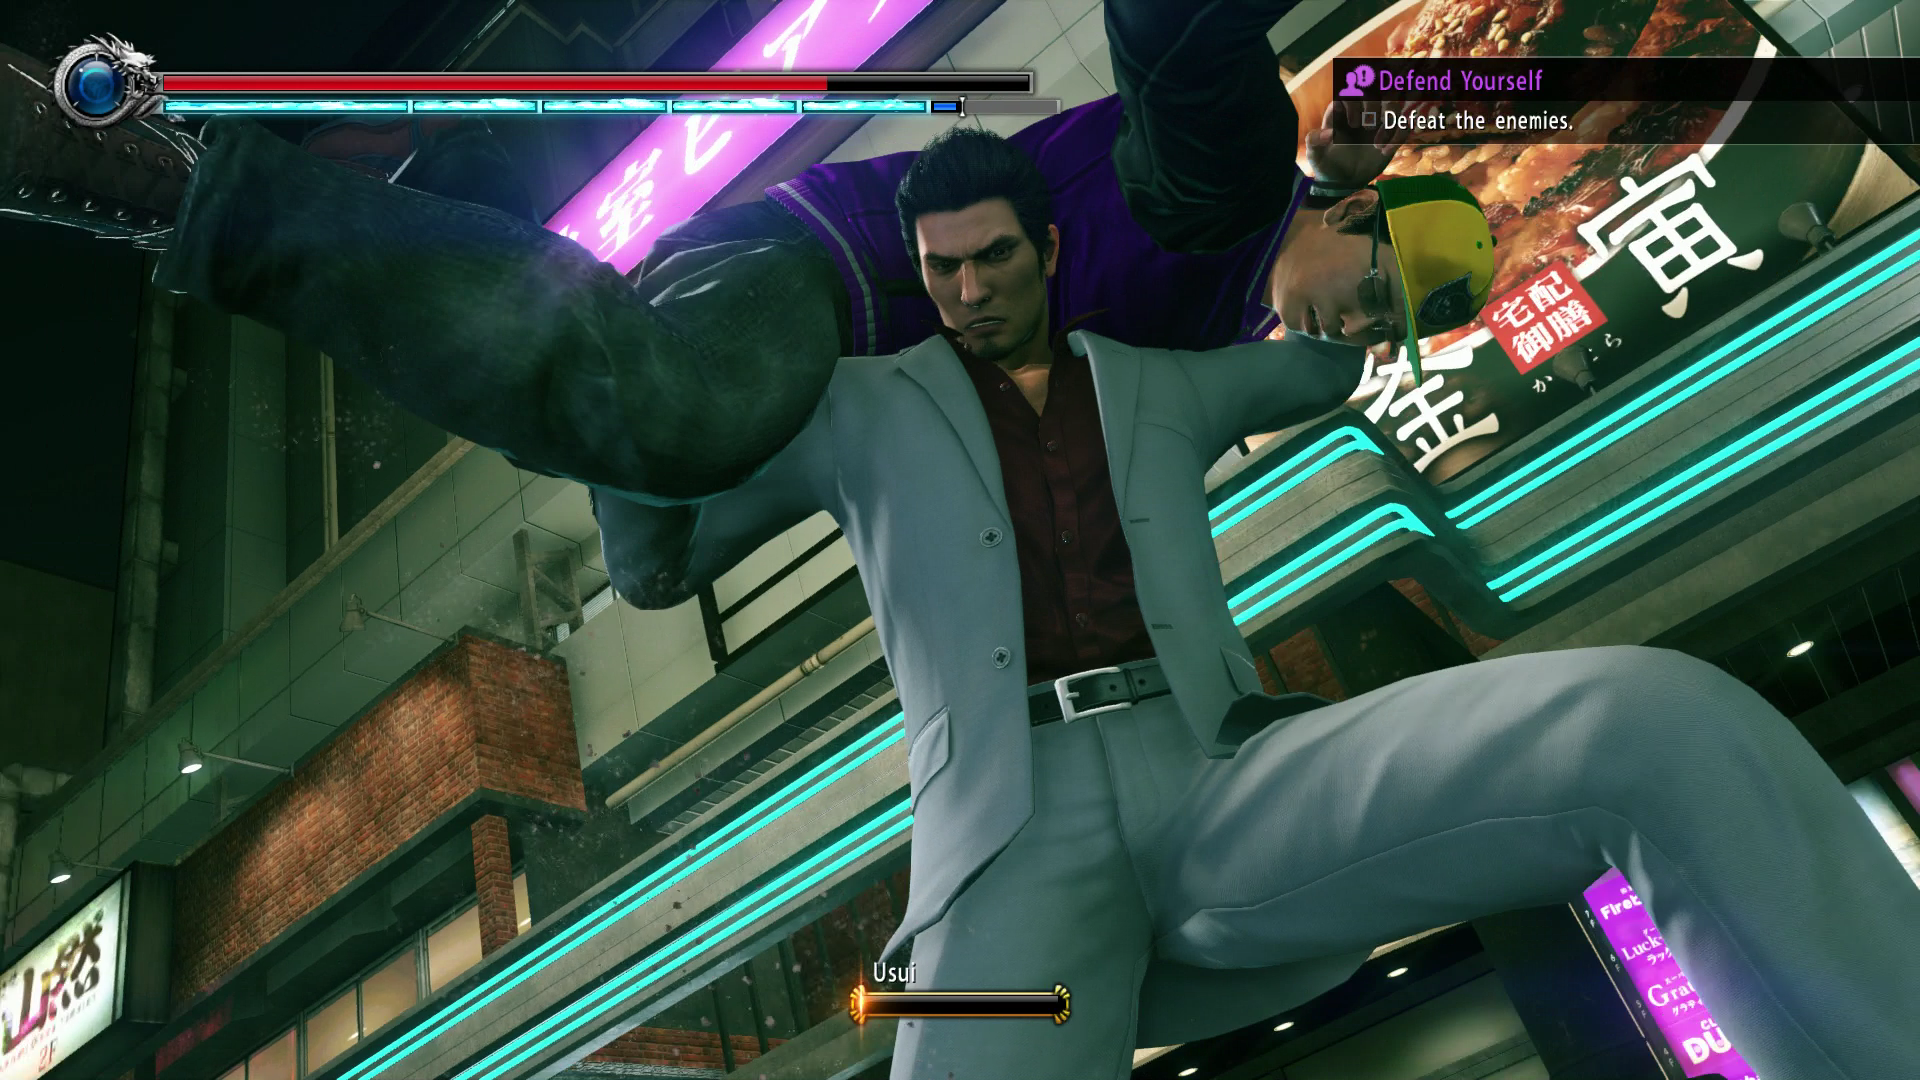 PS4 Yakuza Kiwami 2 Demo Out Now On PSN - GameSpot